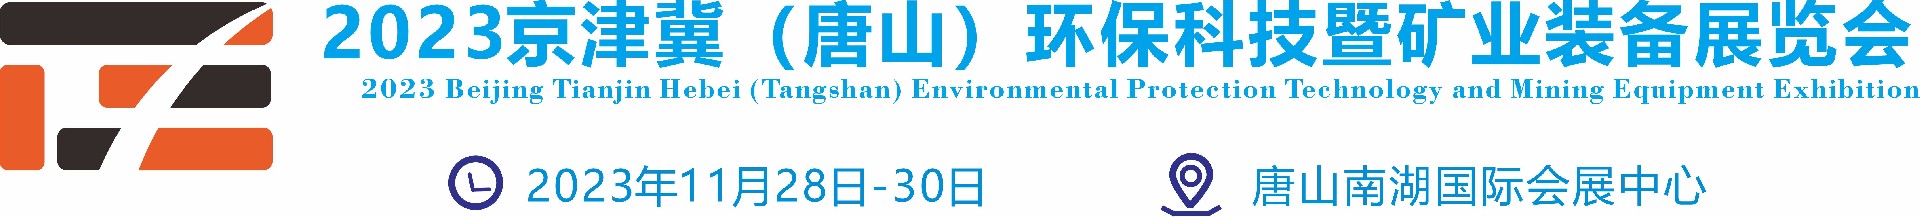 2023京津冀（唐山）环保科技暨矿业装备展览会-国际矿业展